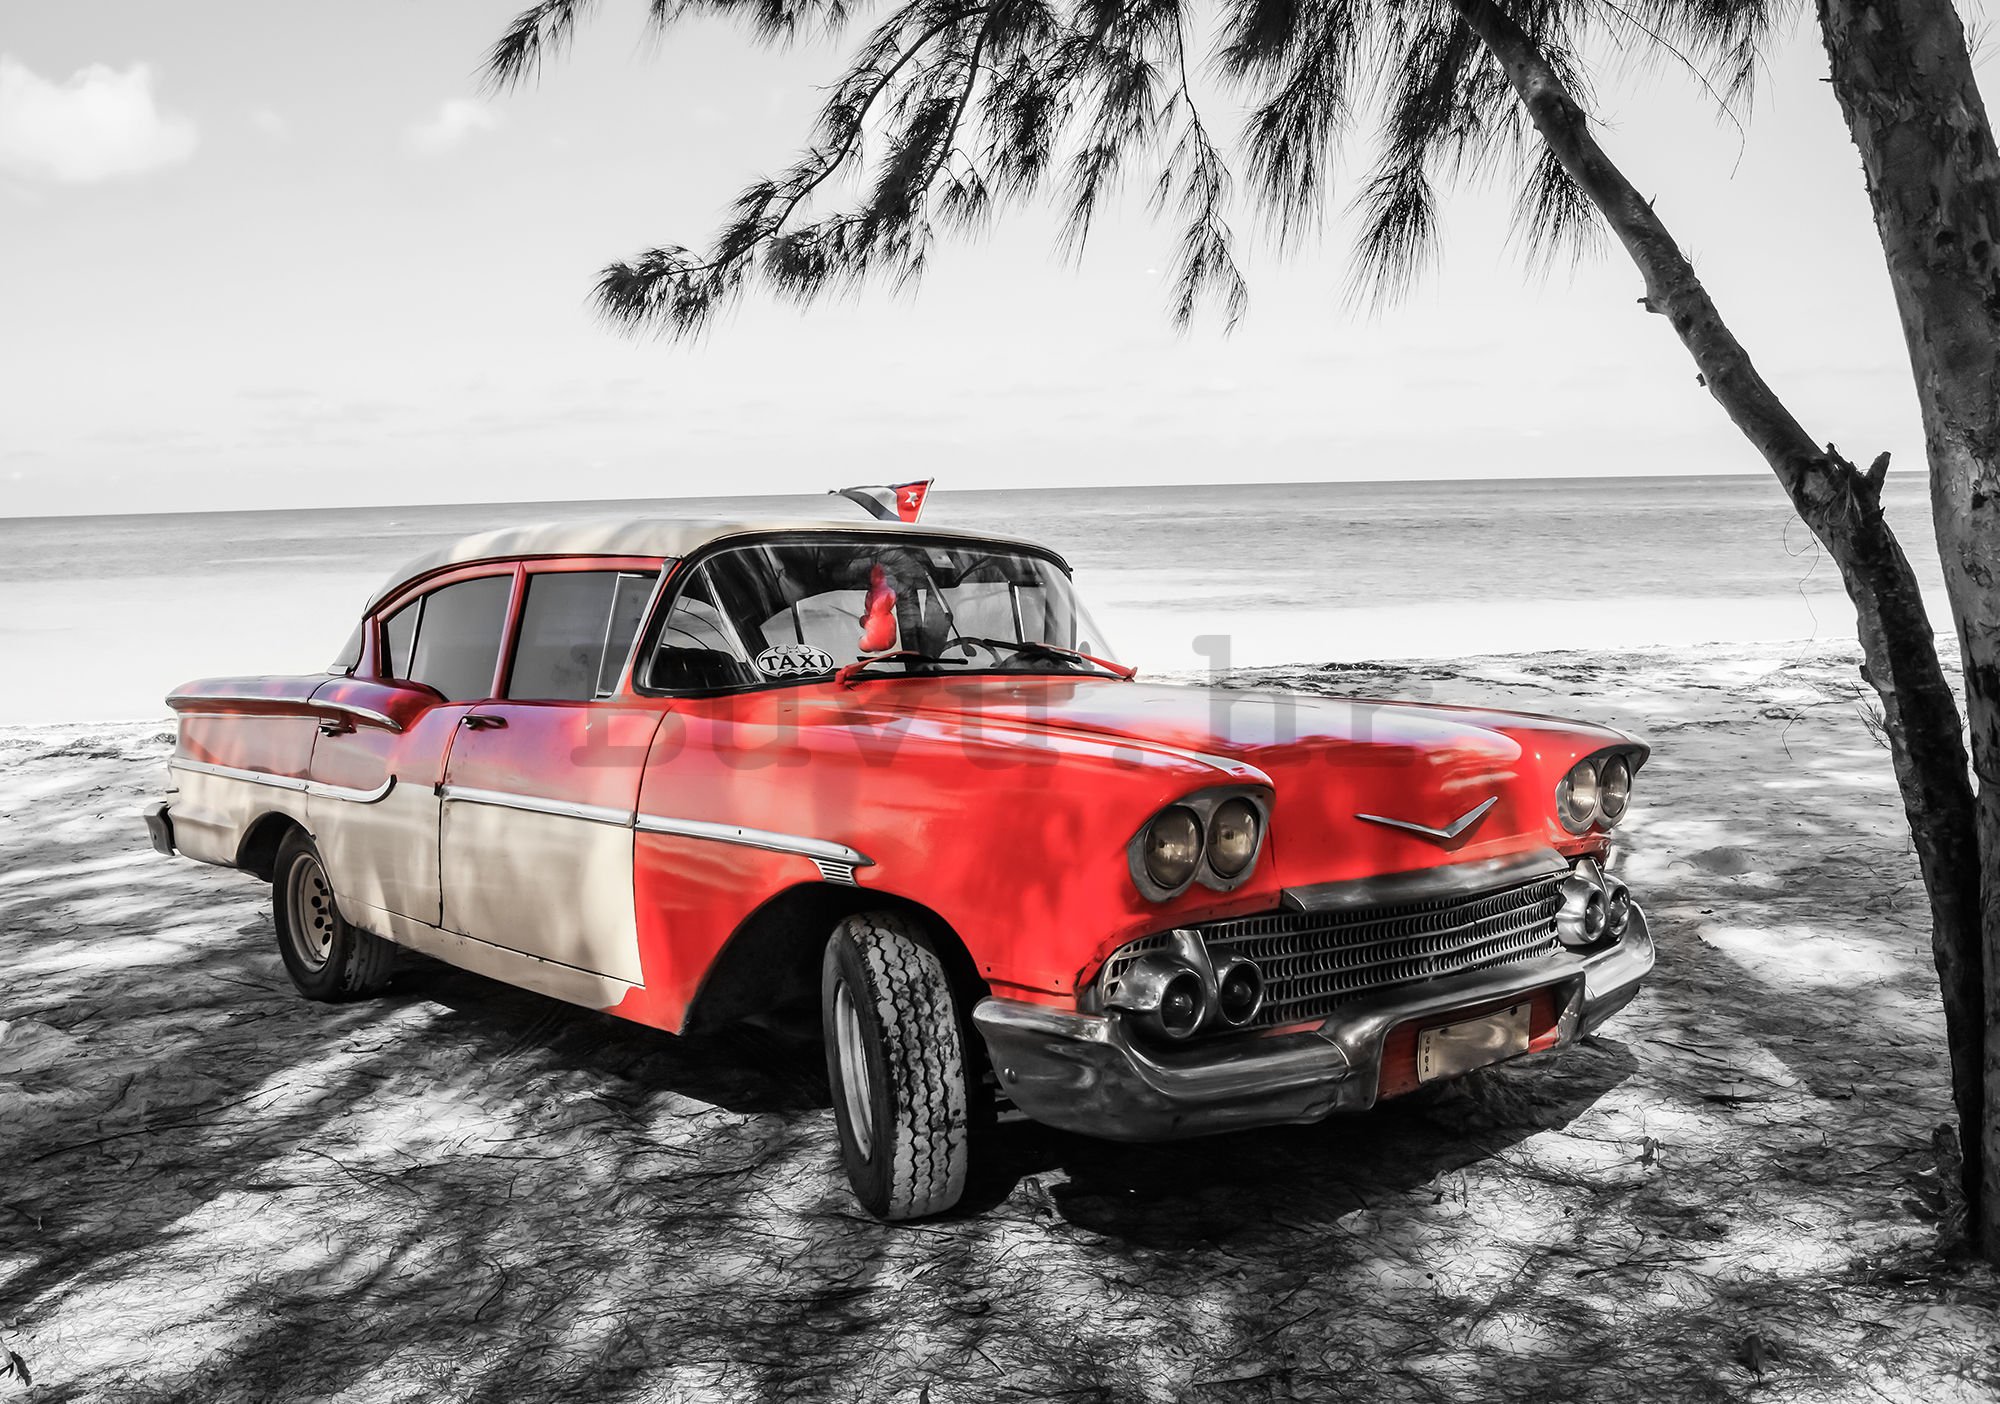 Vlies foto tapeta: Kuba crveni automobil uz more - 184x254 cm